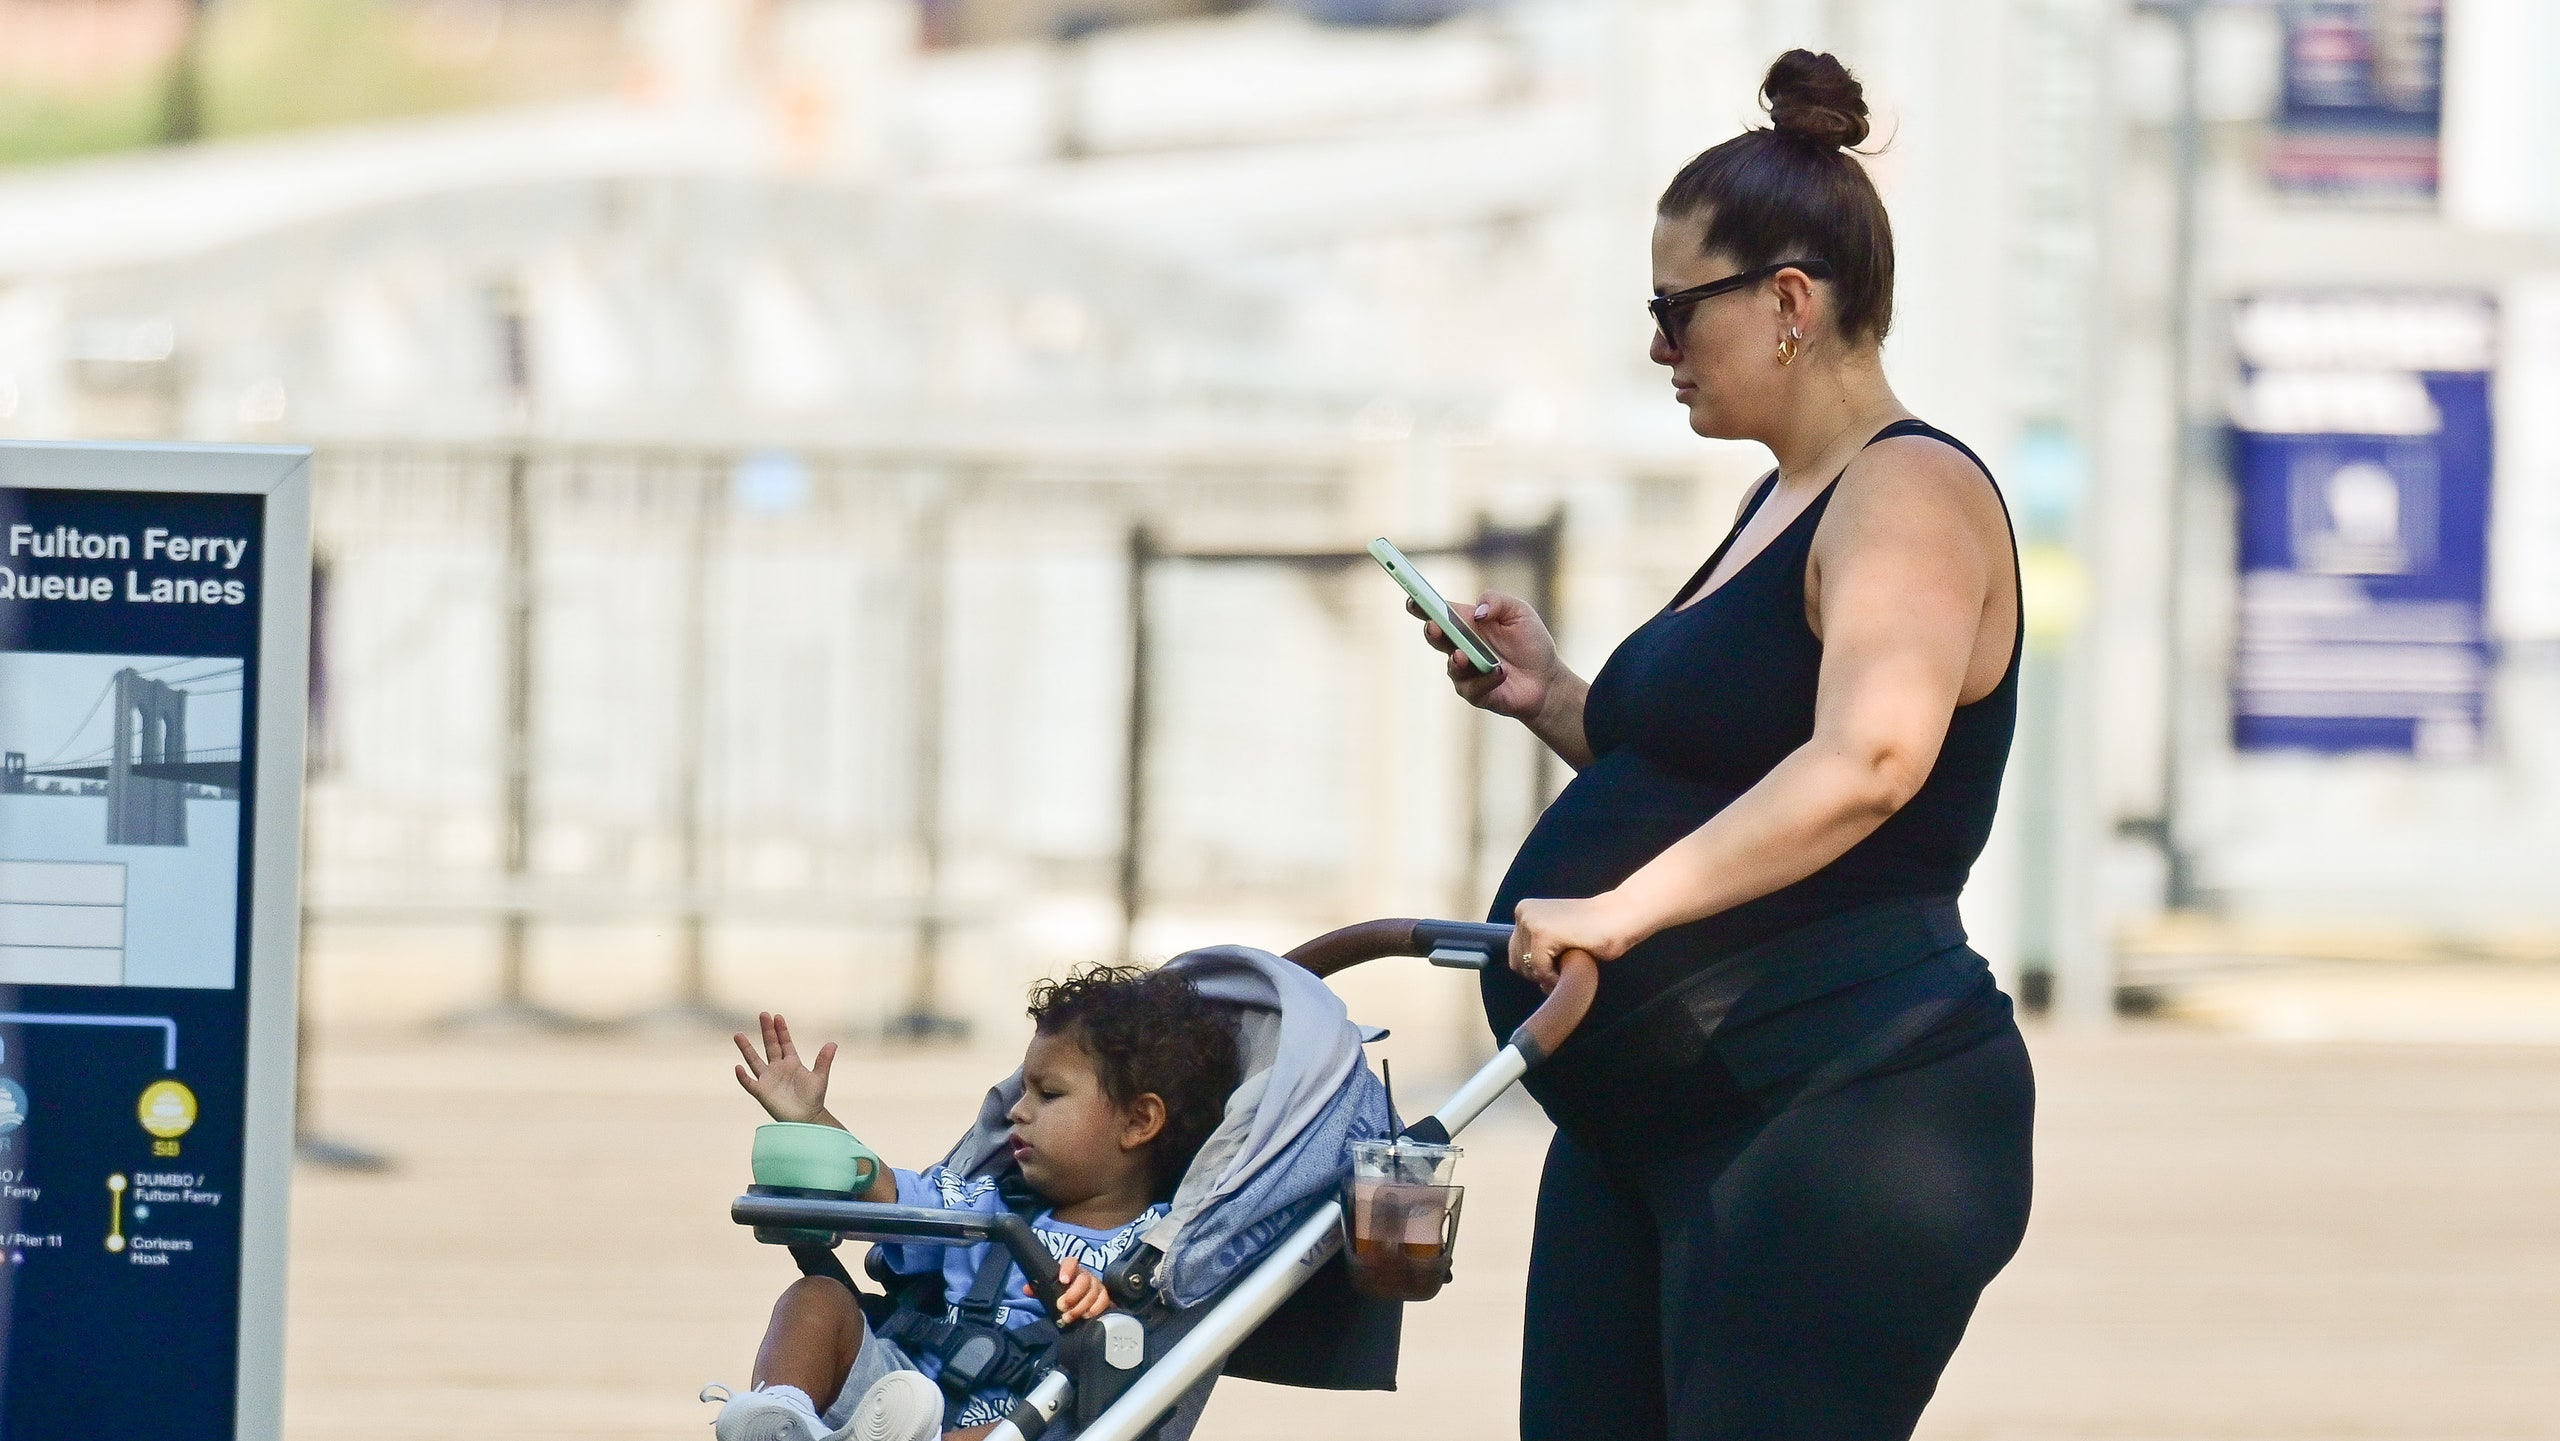 Редкие кадры папарацци сфотографировали беременную двойней Эшли Грэм во время прогулки с ребёнком